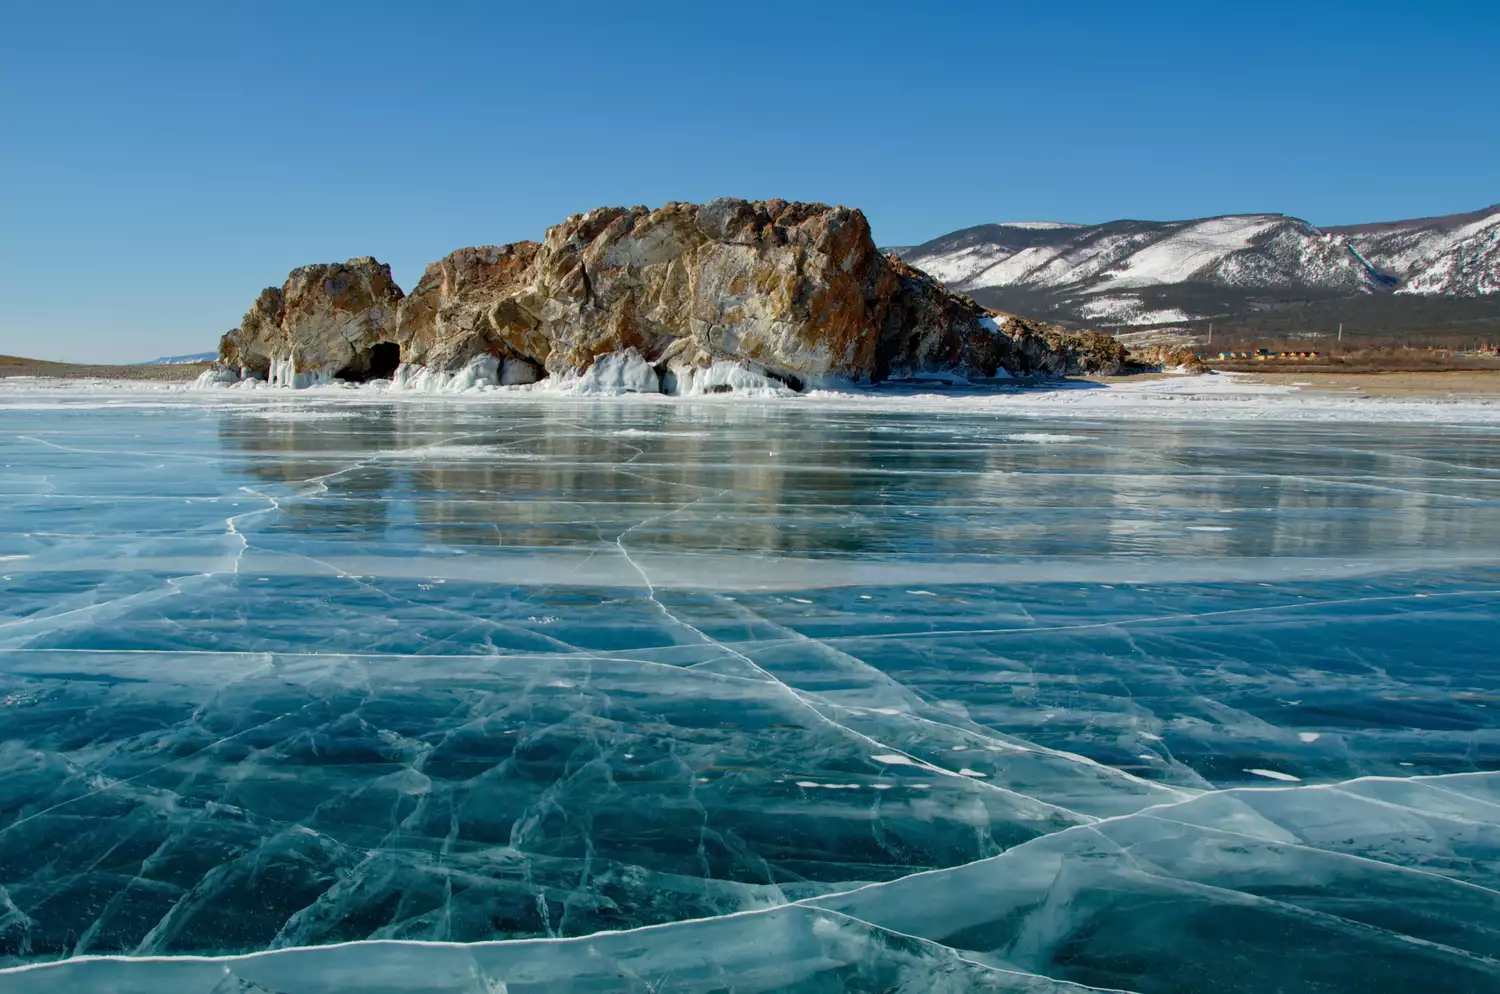 Прозрачное озеро с полосками льда, ведущими к изрезанной скальной структуре